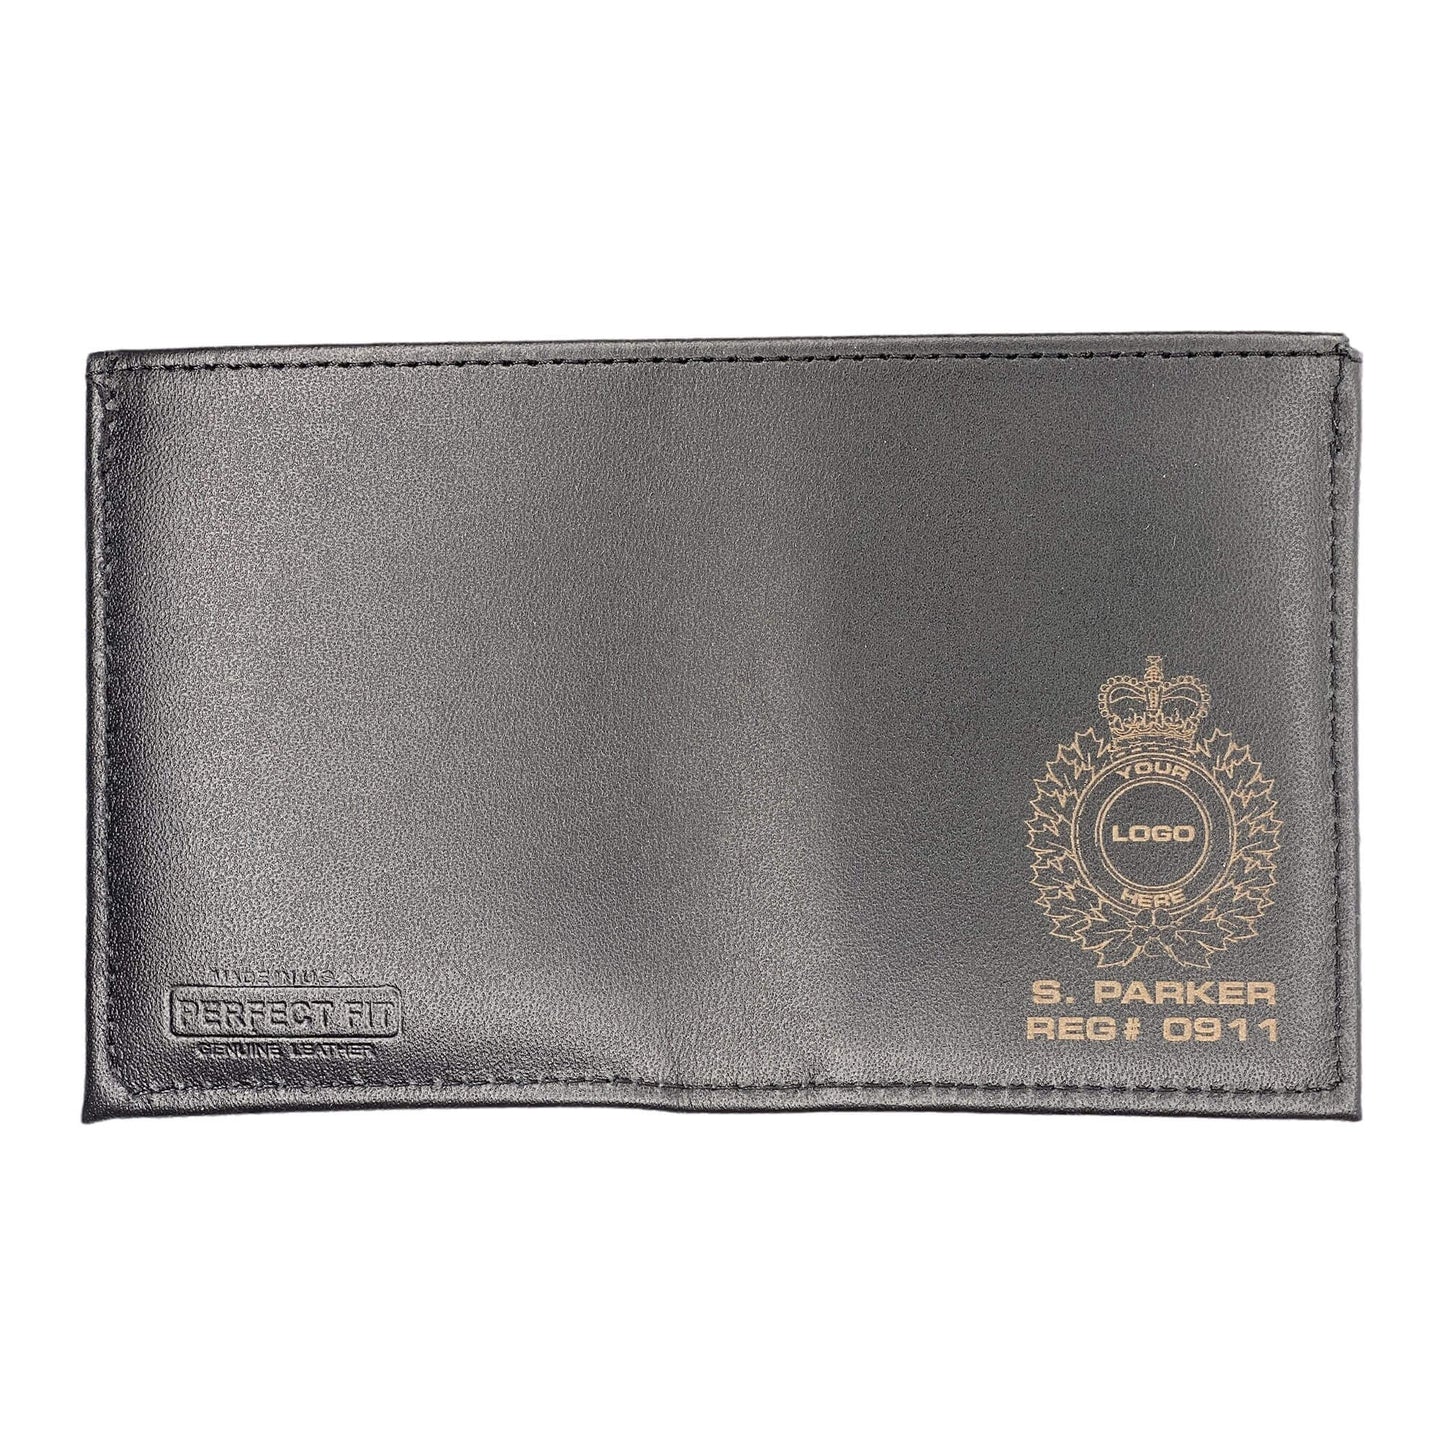 Halton Regional Police Badge Wallet